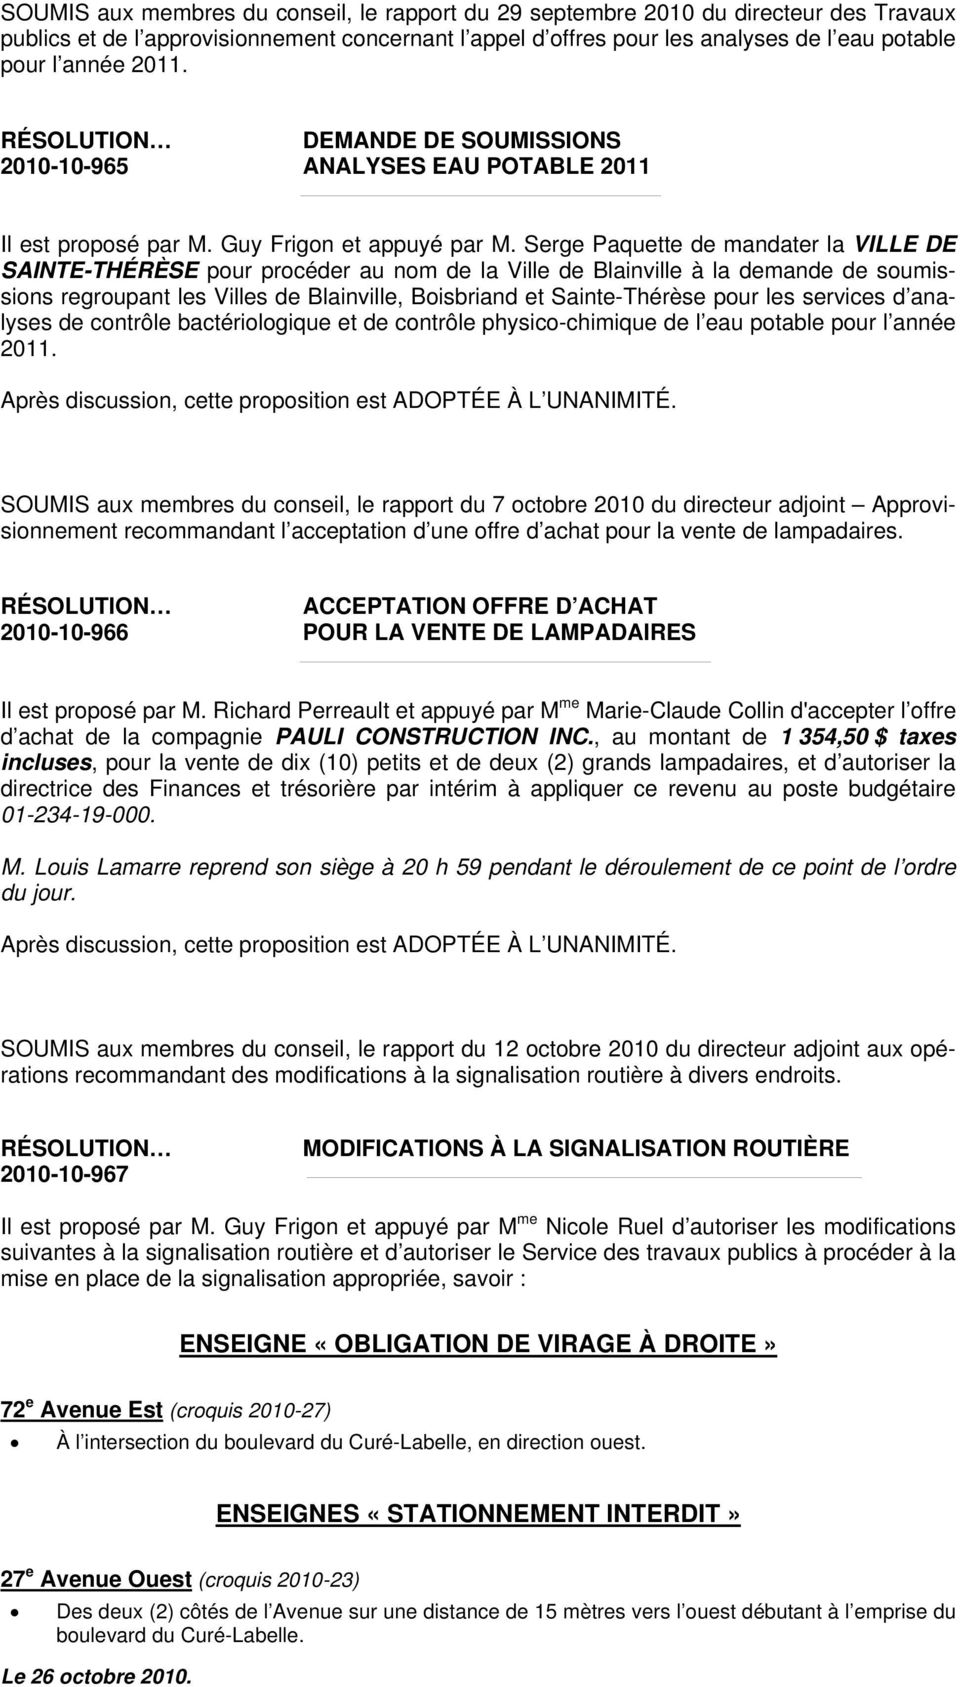 Serge Paquette de mandater la VILLE DE SAINTE-THÉRÈSE pour procéder au nom de la Ville de Blainville à la demande de soumissions regroupant les Villes de Blainville, Boisbriand et Sainte-Thérèse pour